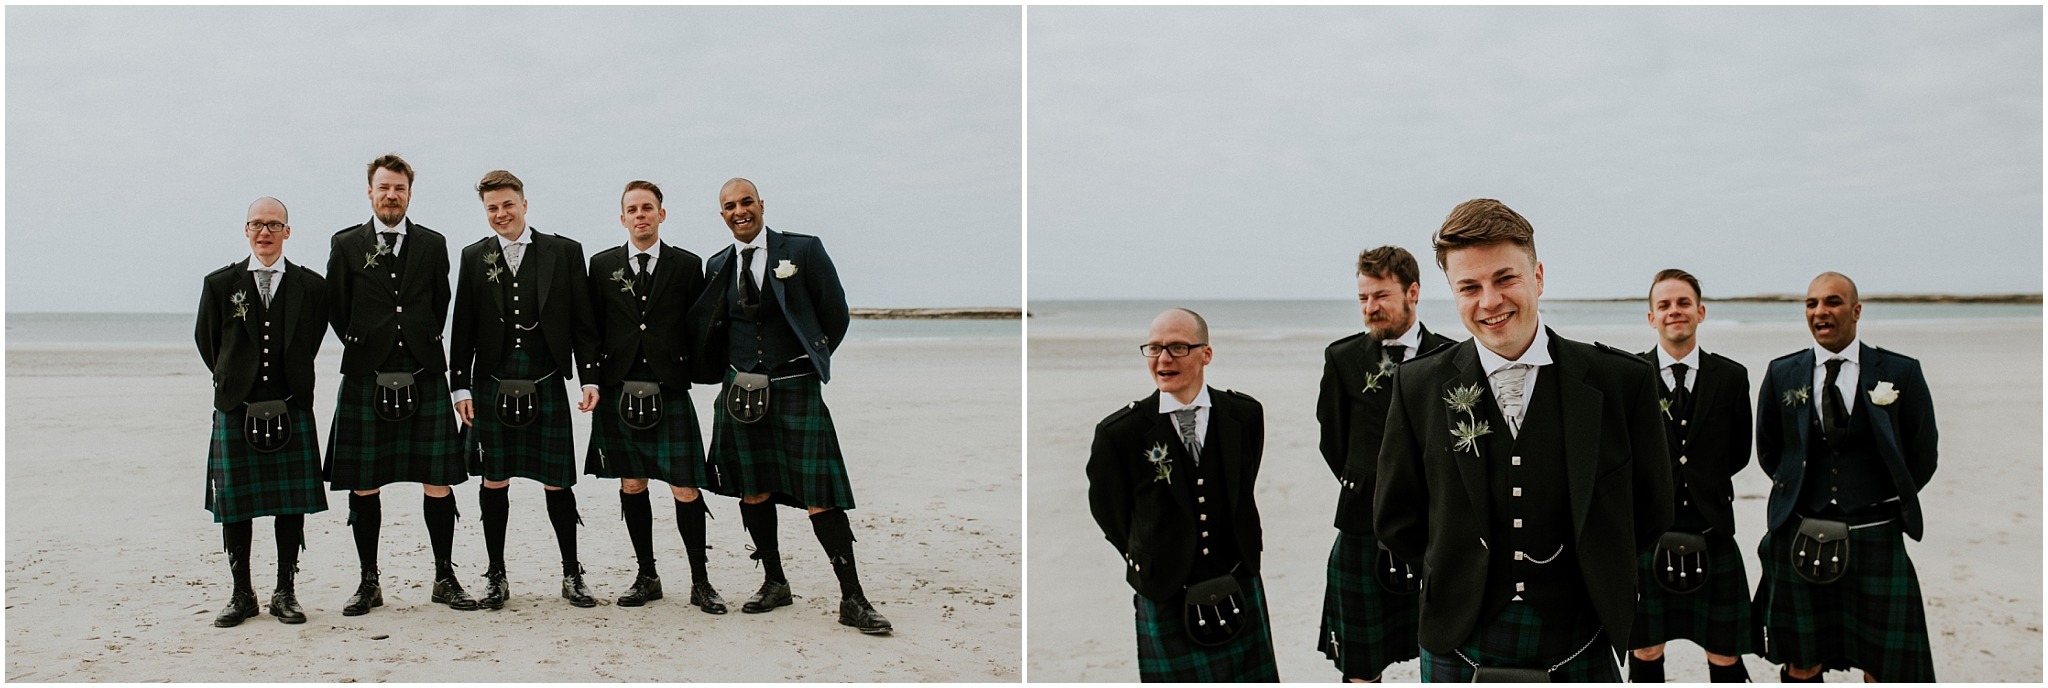 groomsmen on the beach